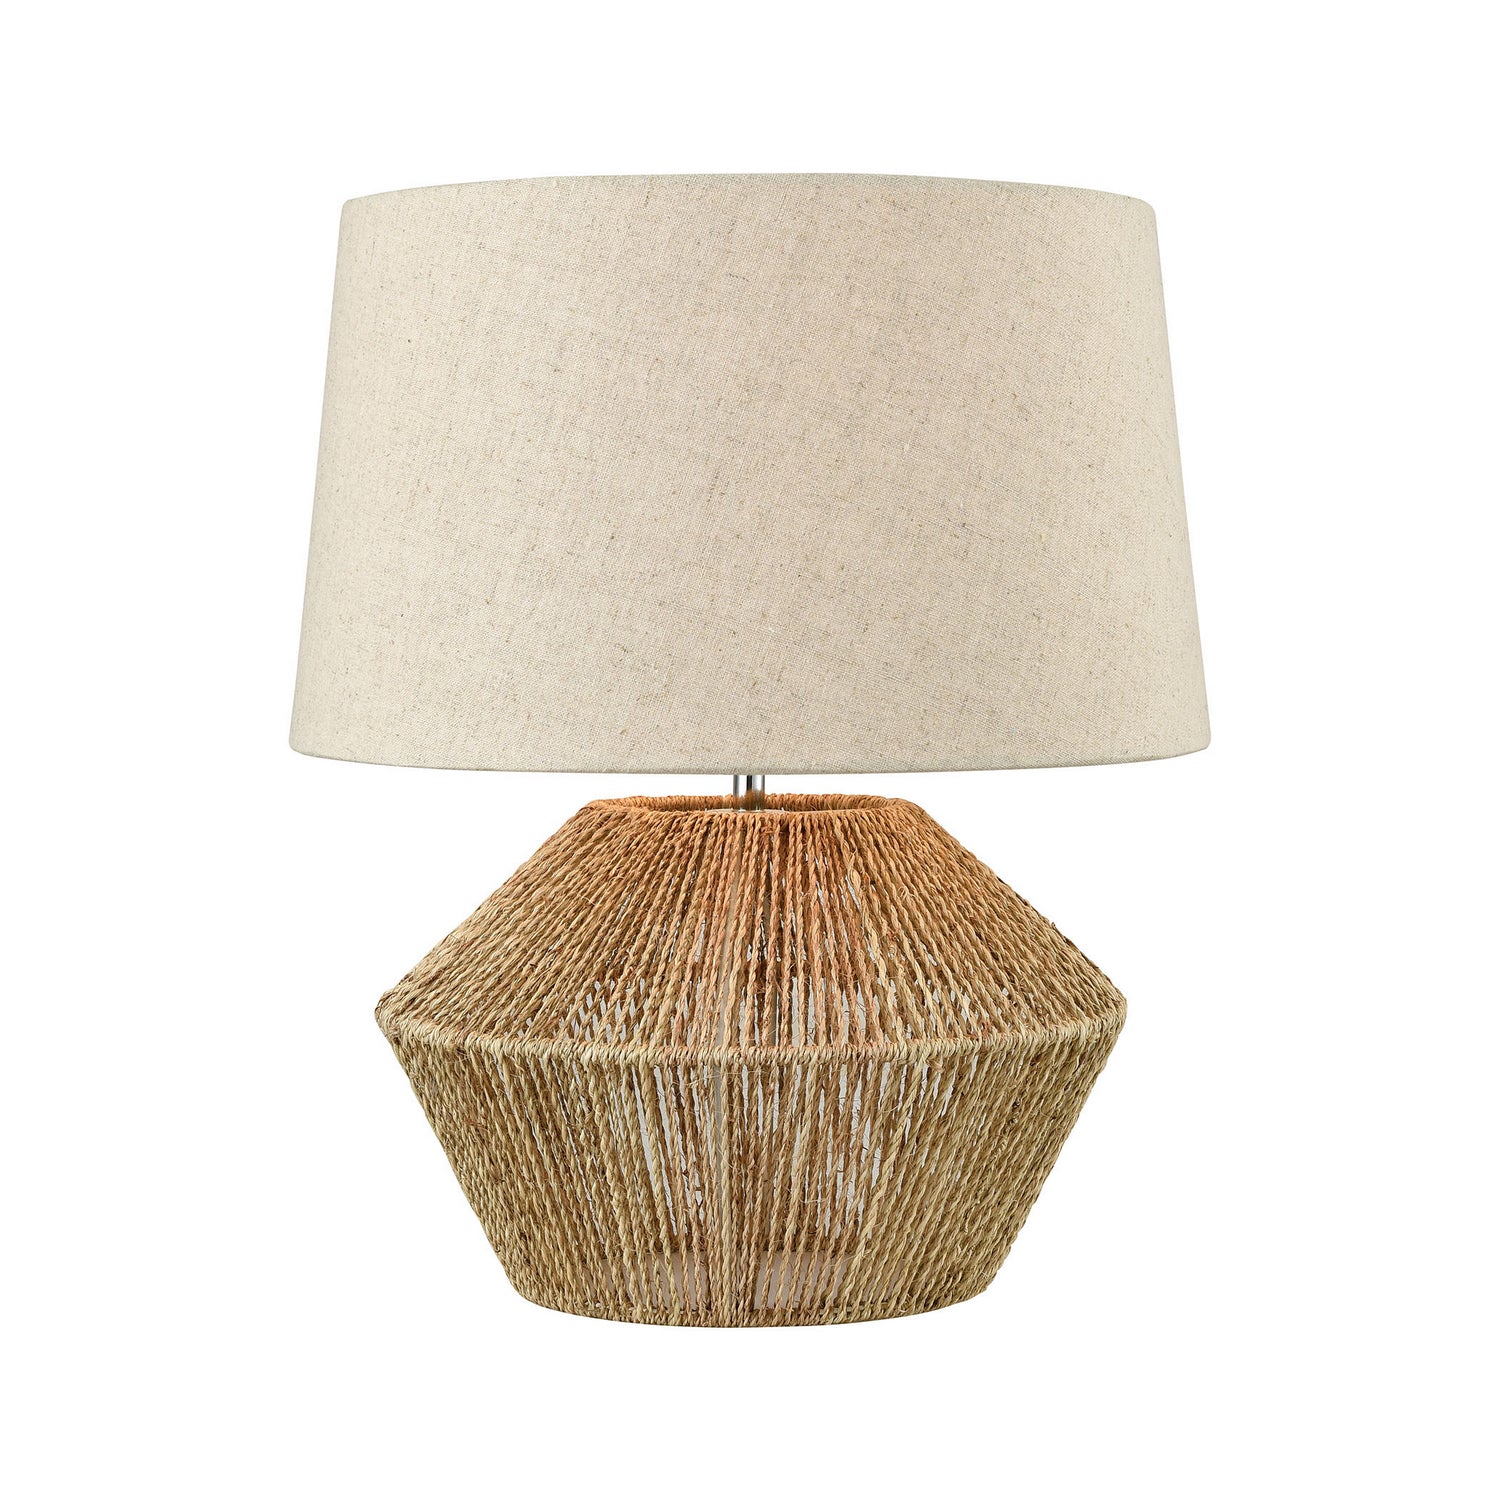 ELK Home - D3781 - One Light Table Lamp - Vavda - Natural